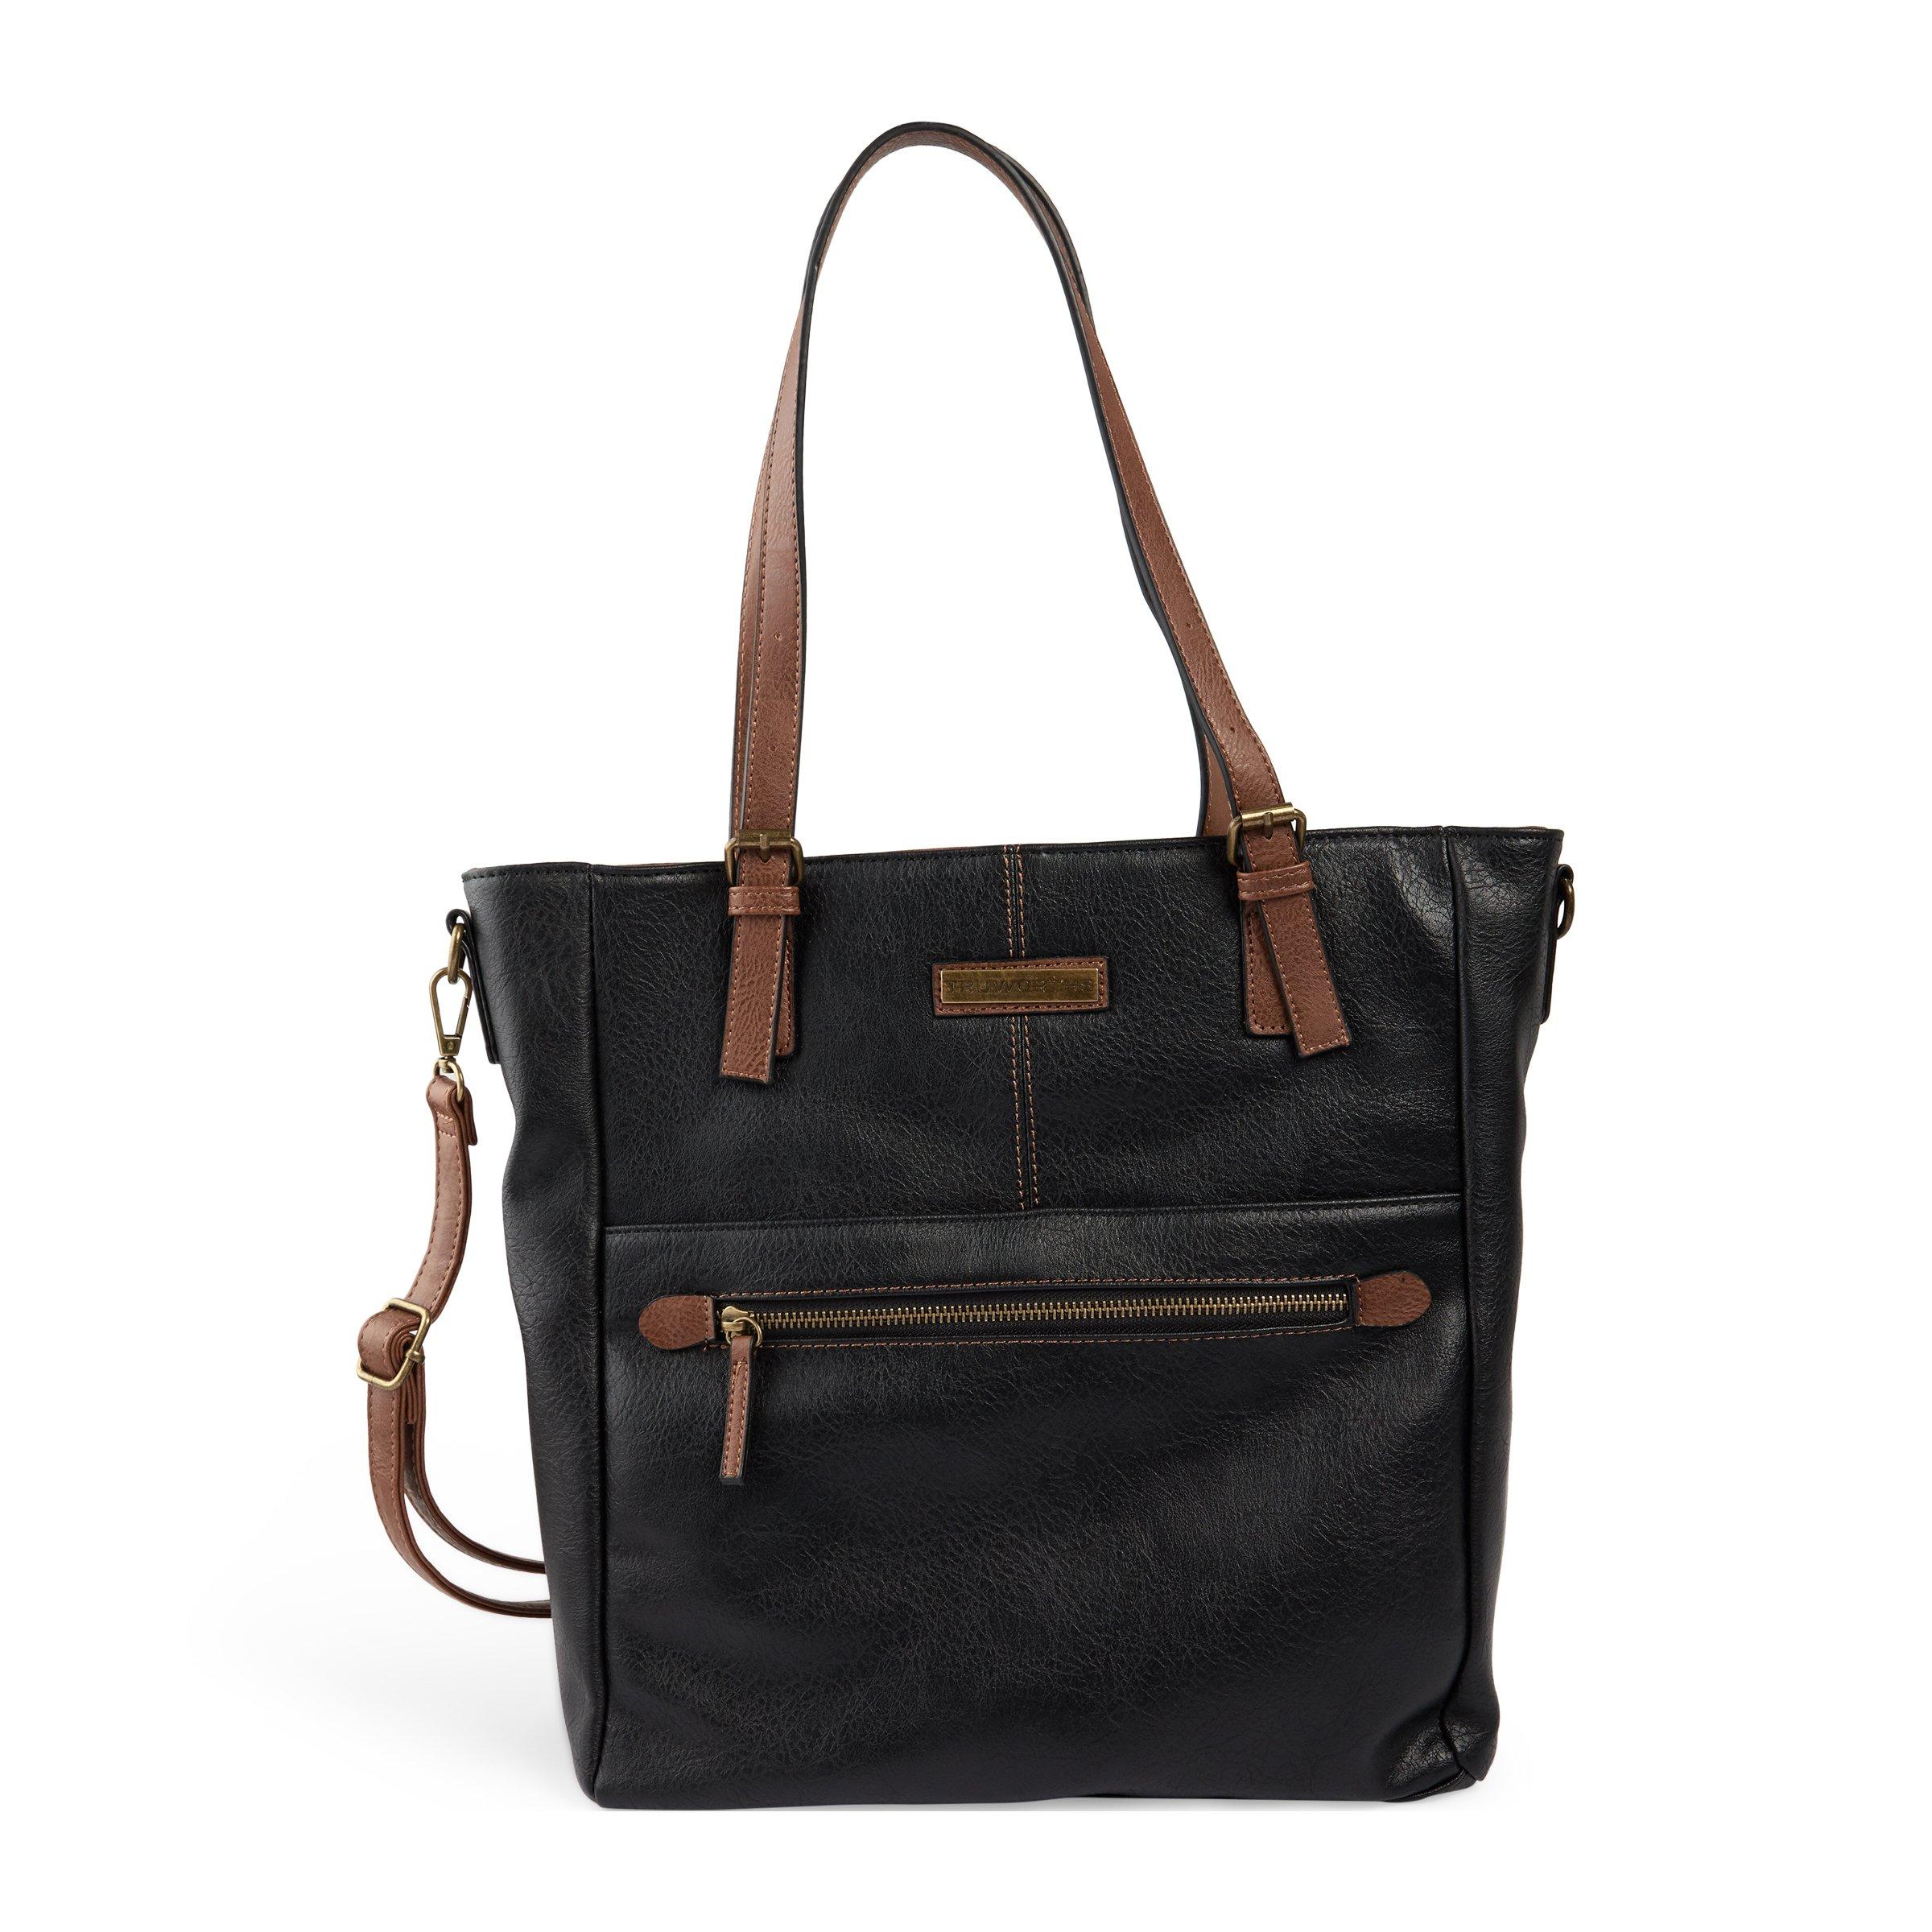 Buy Truworths Black Shopper Bag Online | Truworths